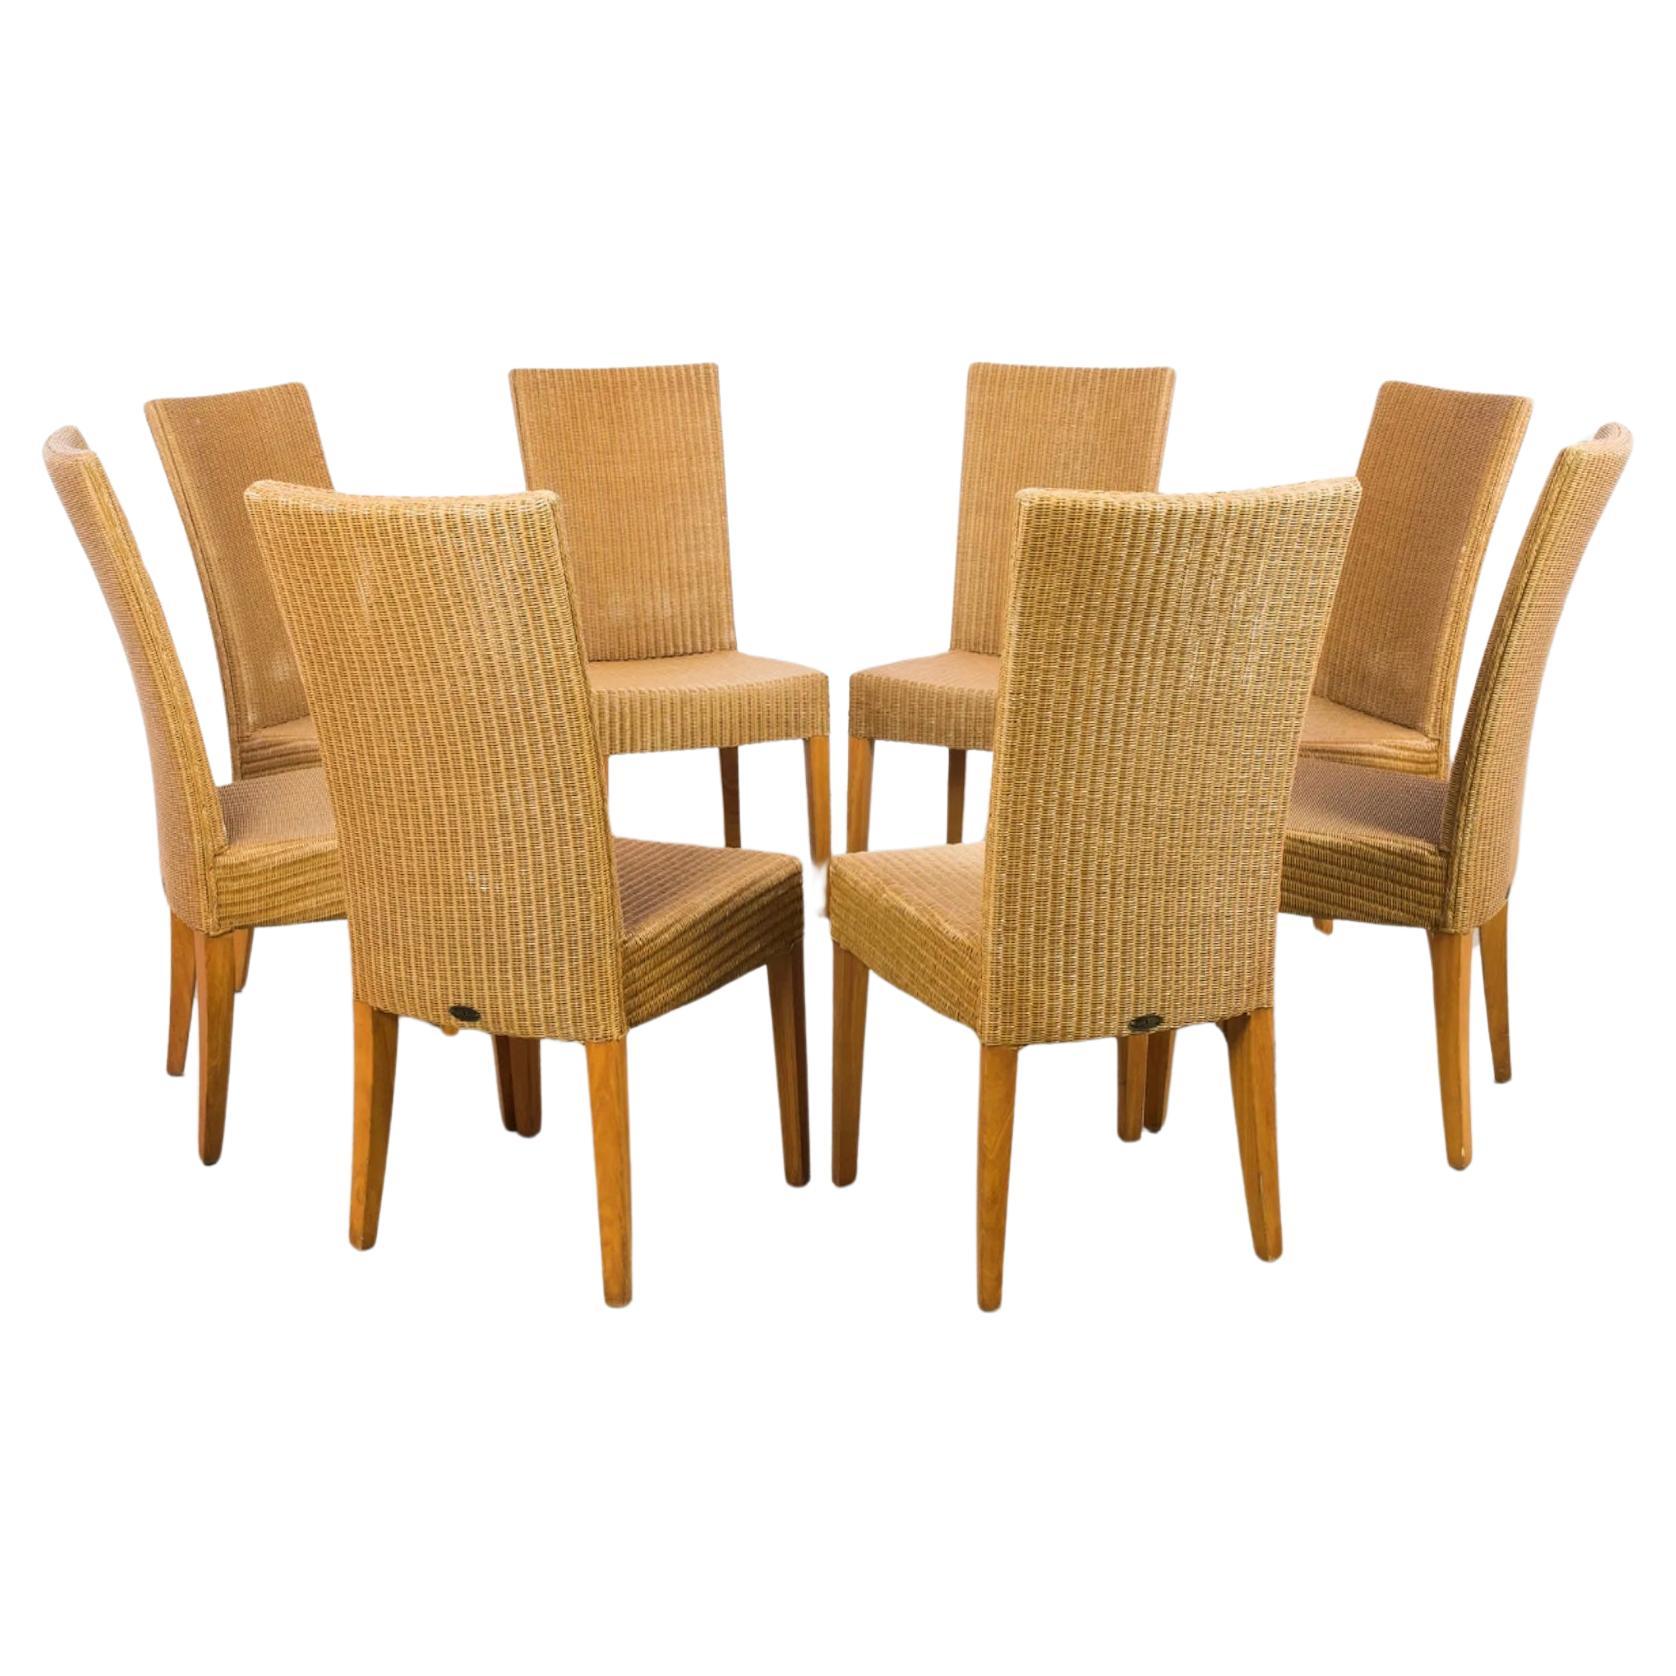 Ensemble de 8 chaises de salle à manger Vintage Lloyds Loom en osier. Toutes les chaises sont en très bon état. Superbe ensemble de chaises assorties prêtes à l'emploi. Situé à Brooklyn NYC.

Labellisé Lloyds Loom Brass tag.

Dimensions : L 19